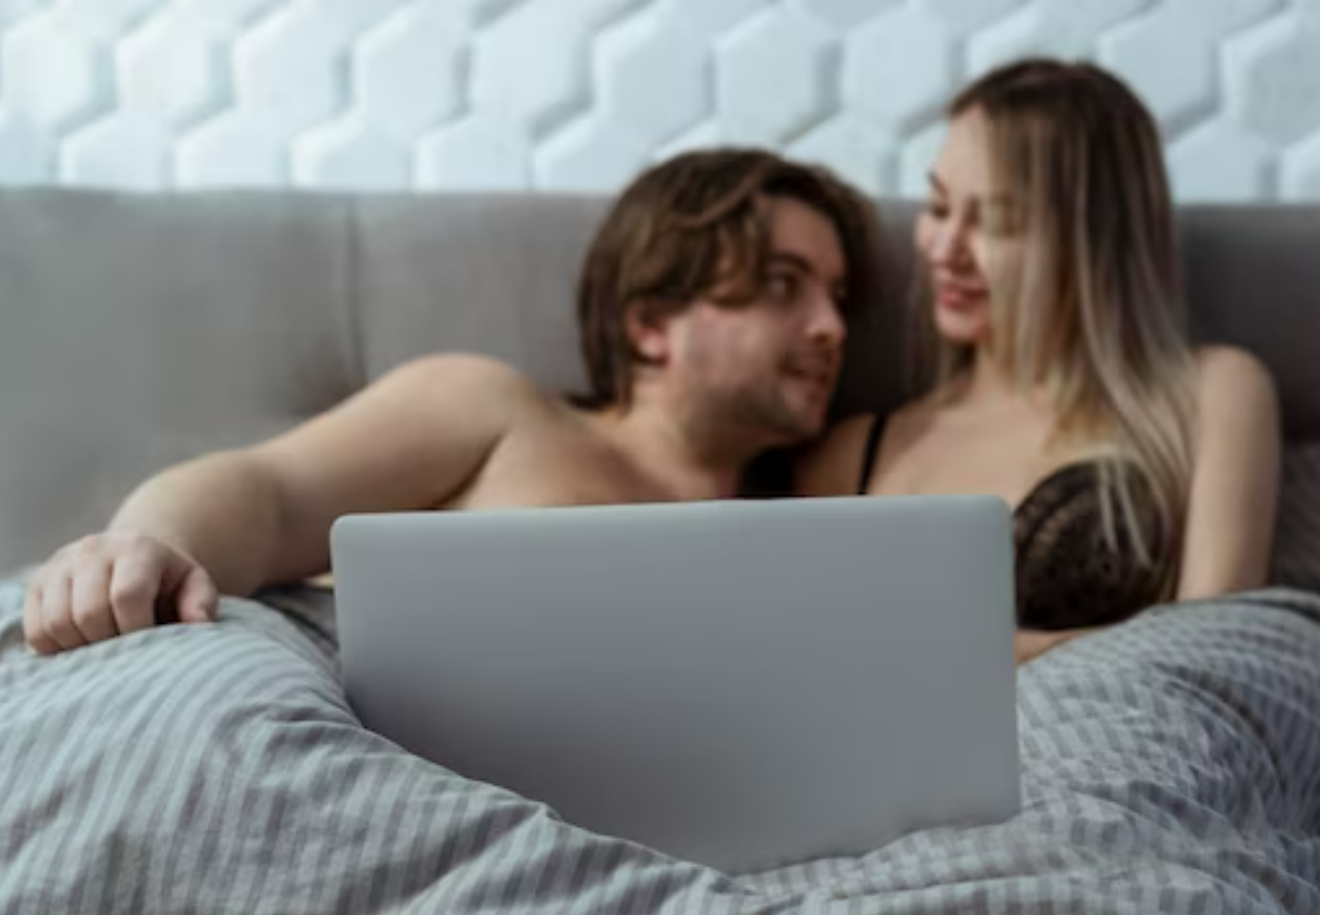 Советы по просмотру порно вместе с проституткой post thumbnail image